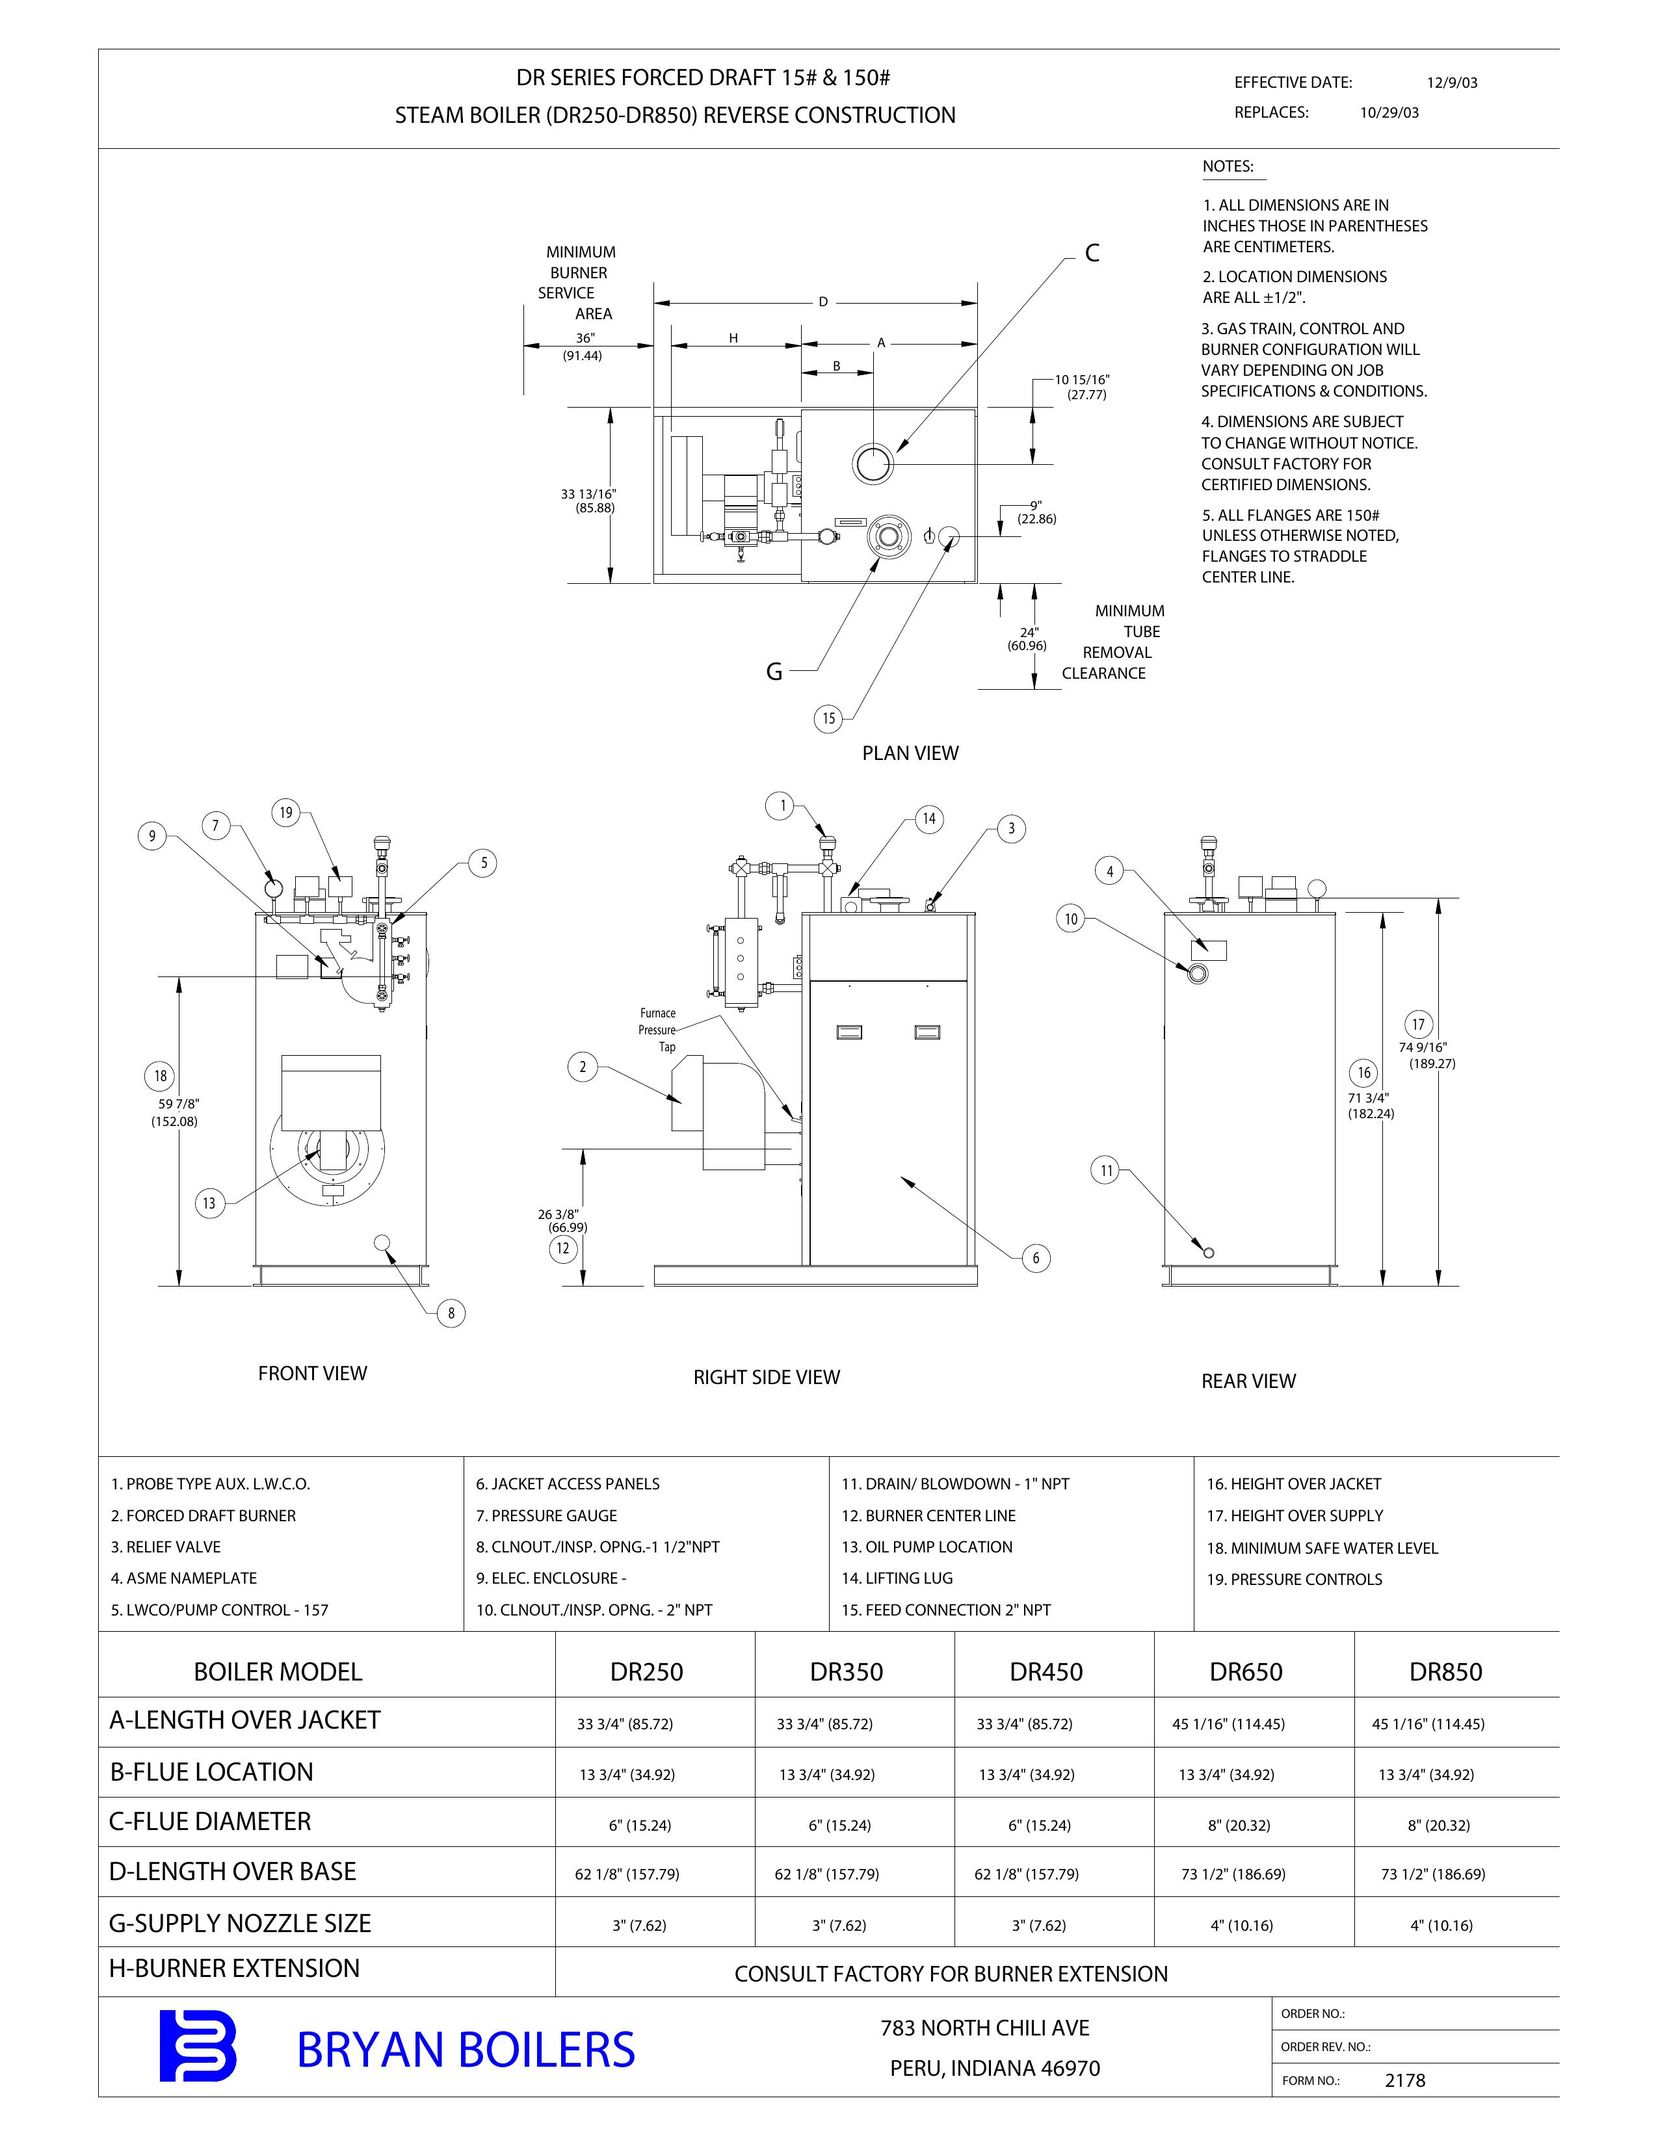 Bryan Boilers DR650 Boiler User Manual